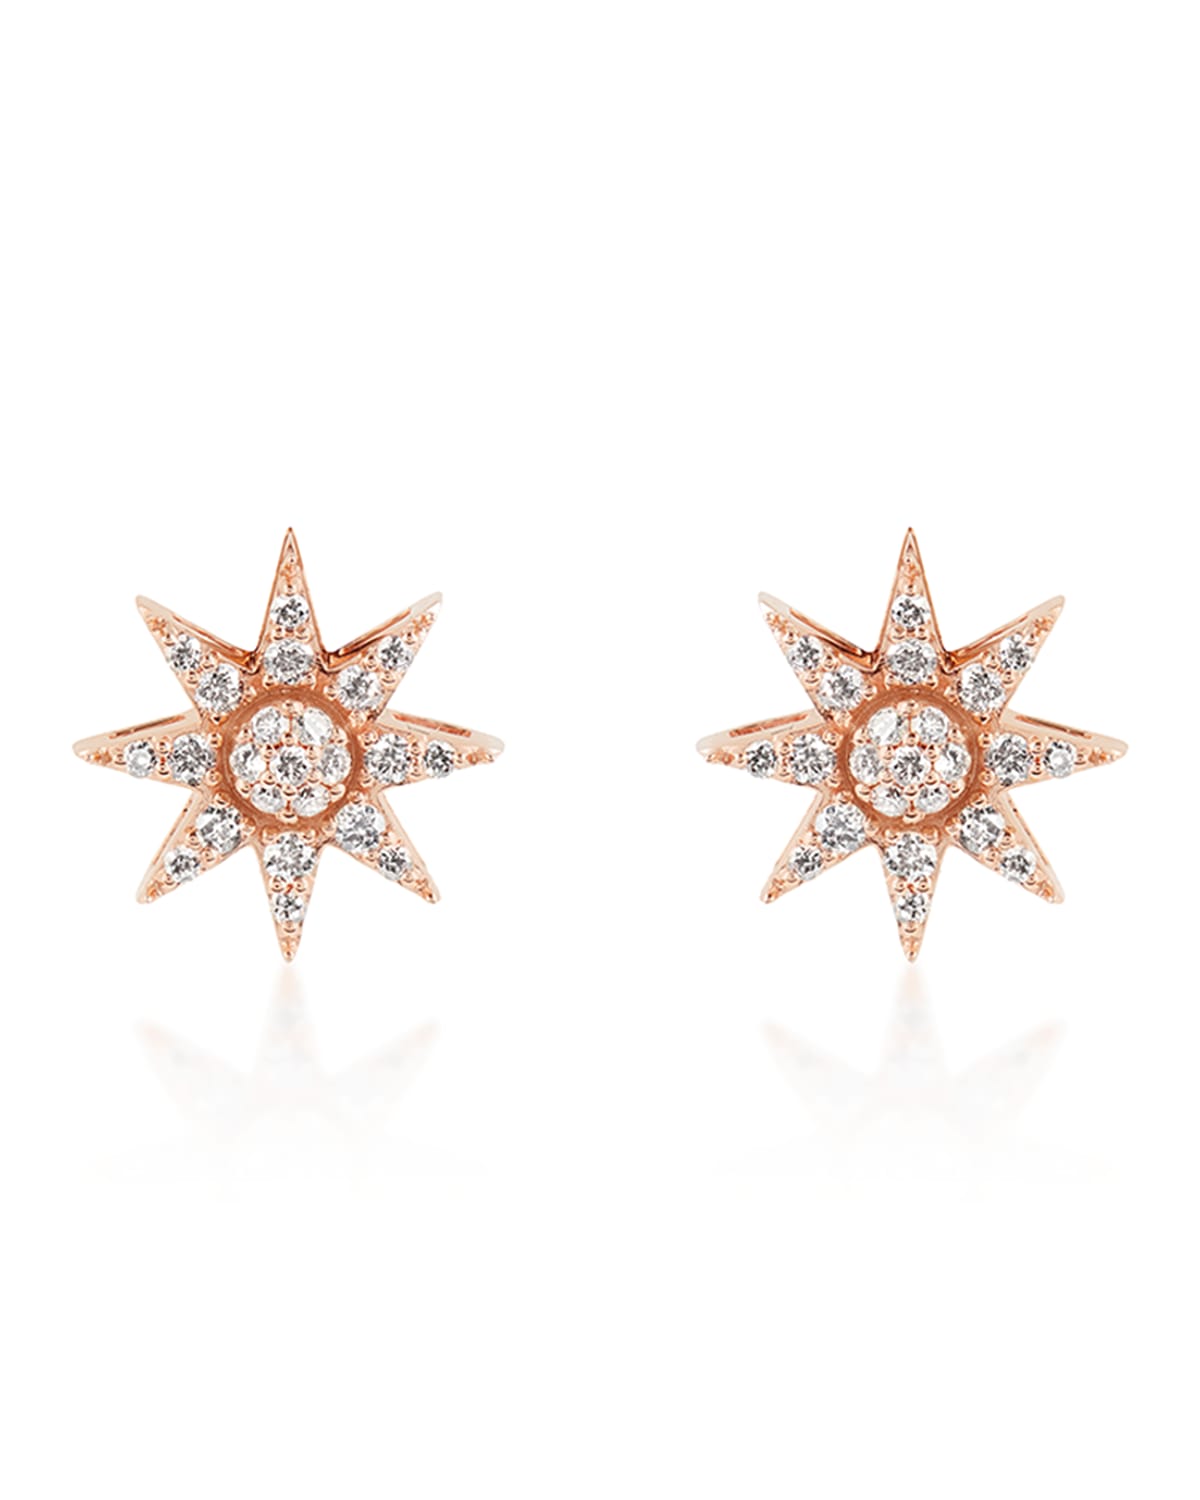 Venus Star 14k Diamond Stud Earrings